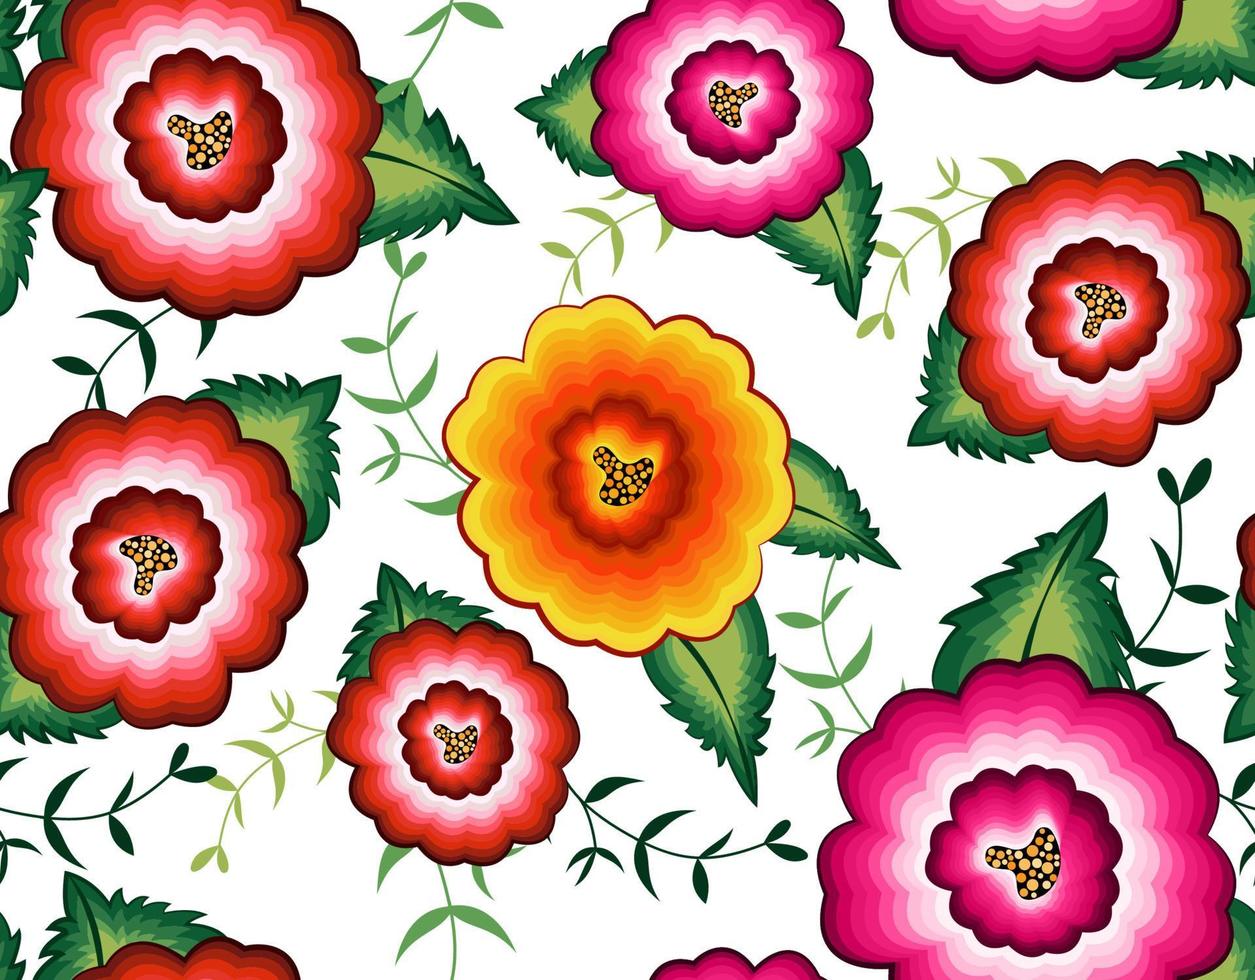 naadloos Mexicaans bloemenborduurpatroon, kleurrijke inheemse bloemen volksmodevormgeving. geborduurde traditionele textiel stijl van mexico, vector geïsoleerd op een witte achtergrond